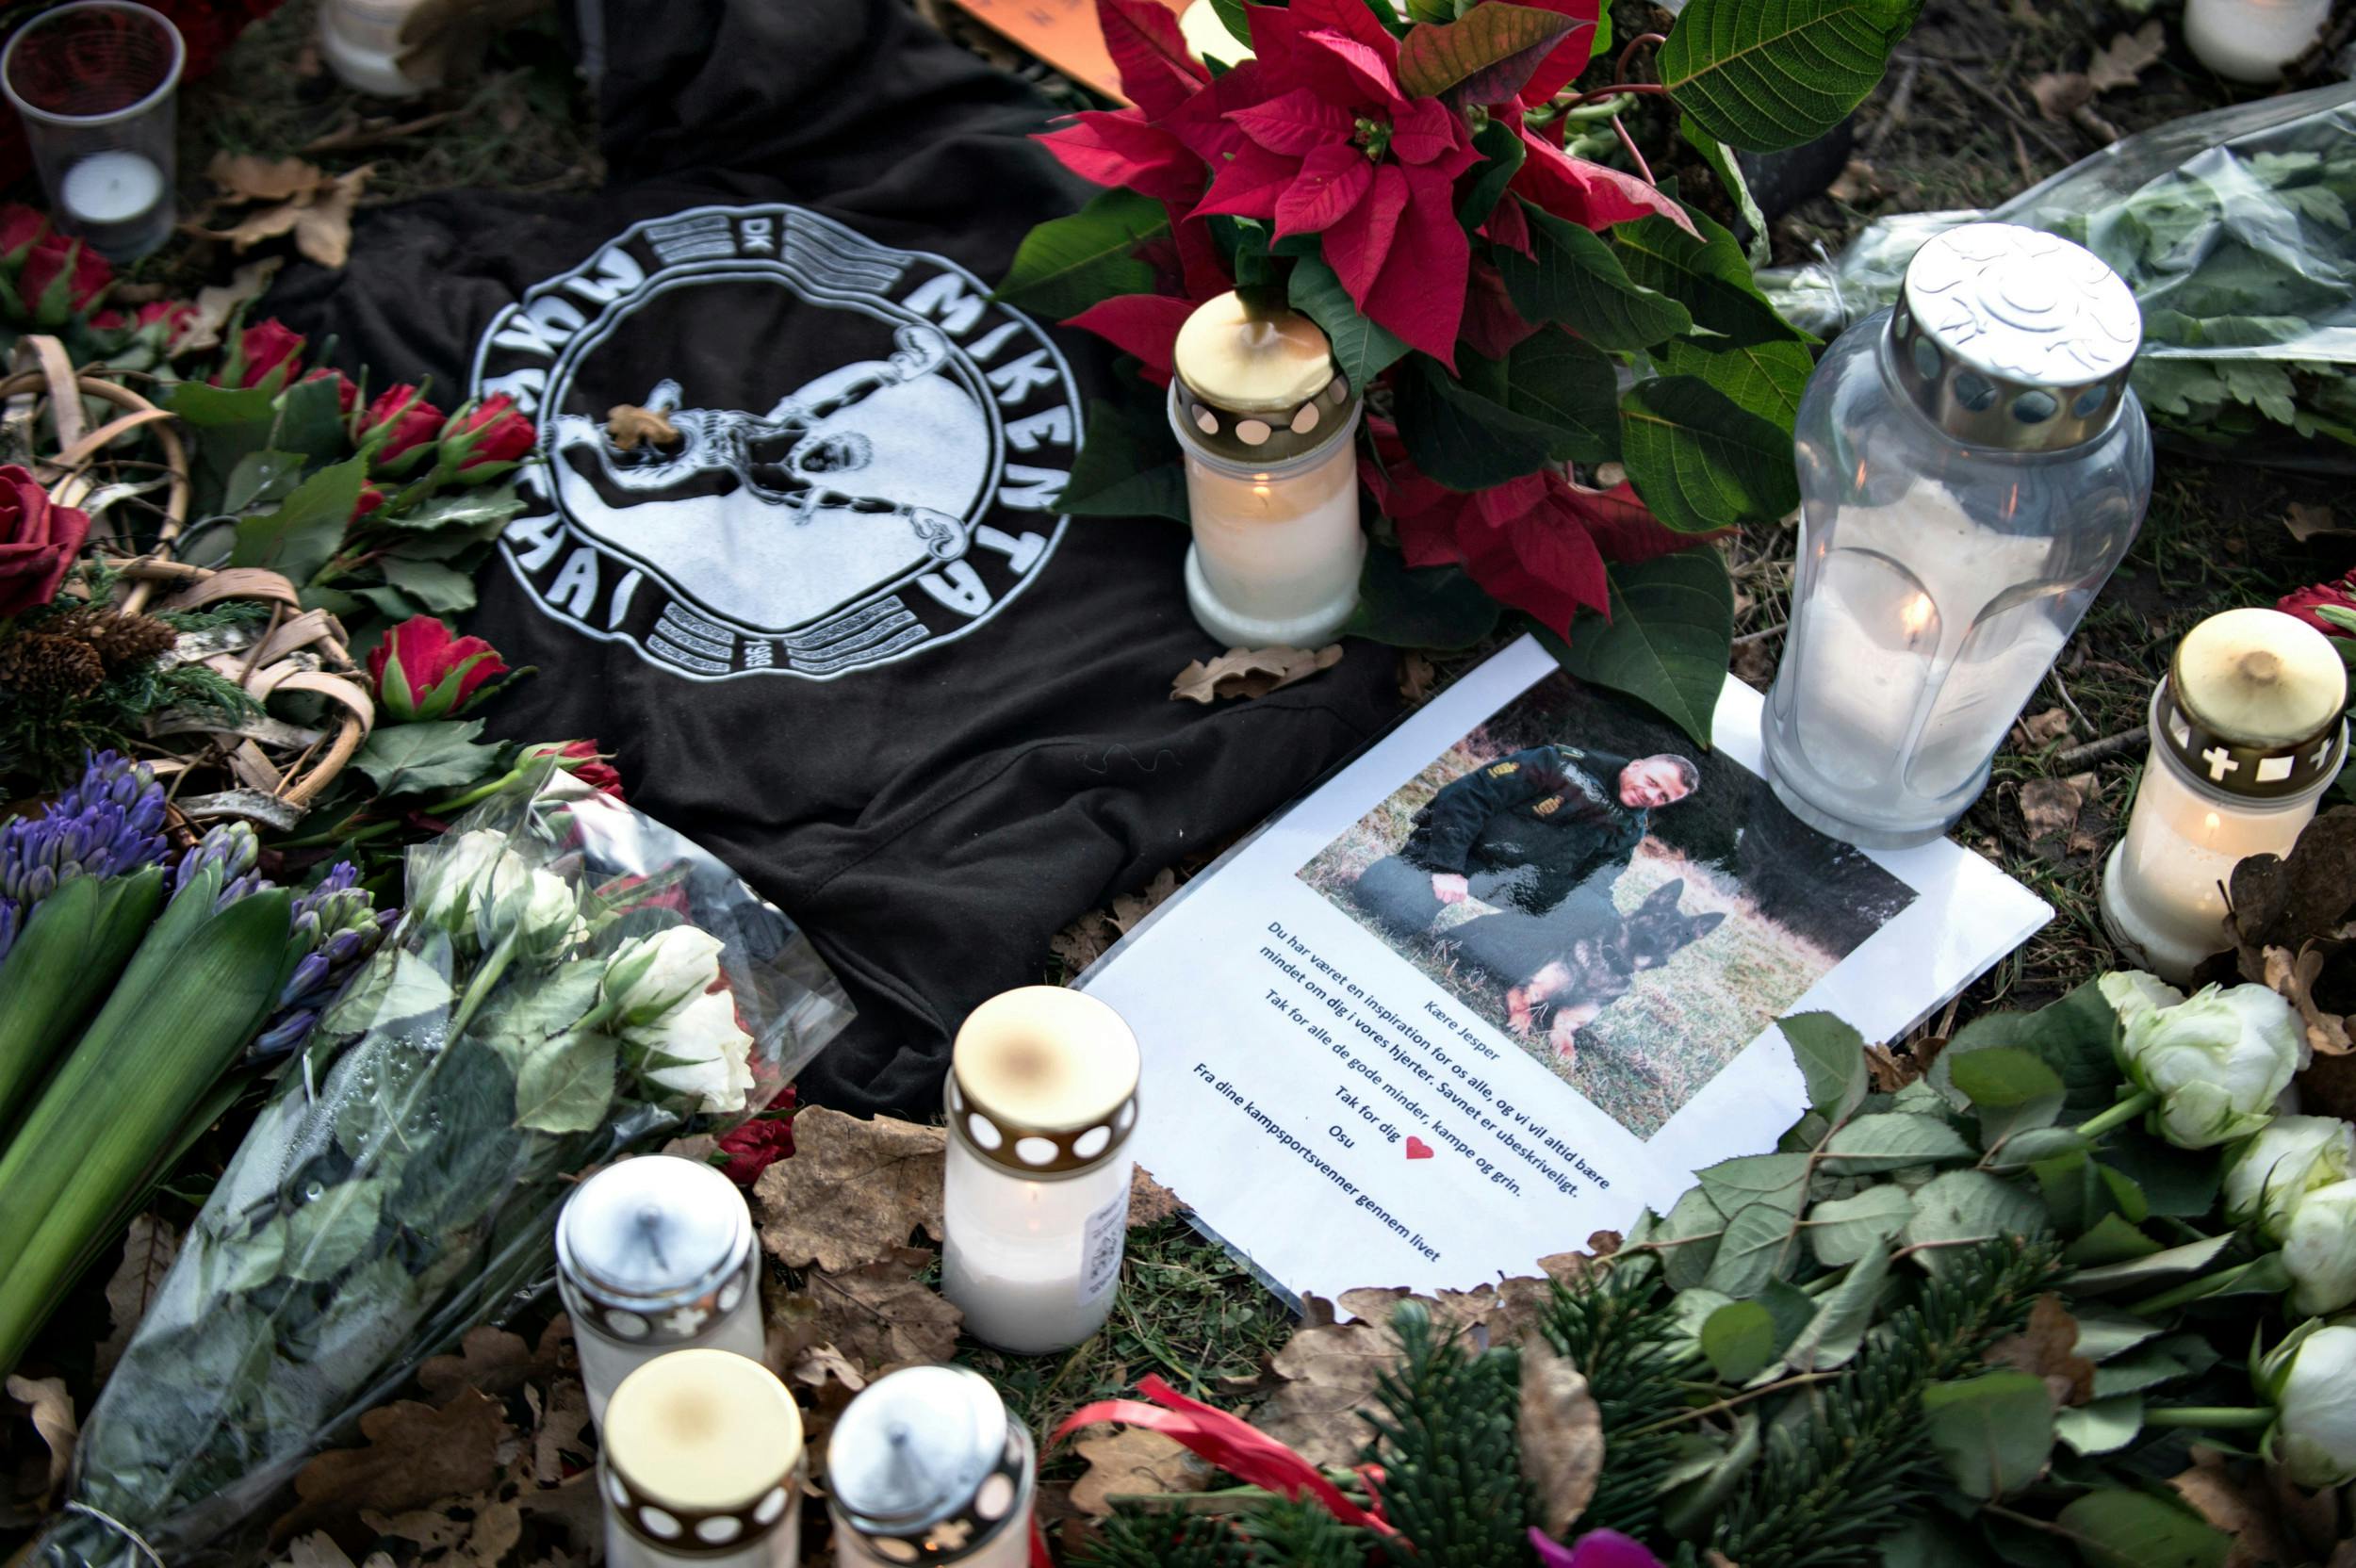 Betjentens kolleger og borgere lagde lys, mindeord og blomster foran politigården i Albertslund ved København, hvor han var blevet dræbt.